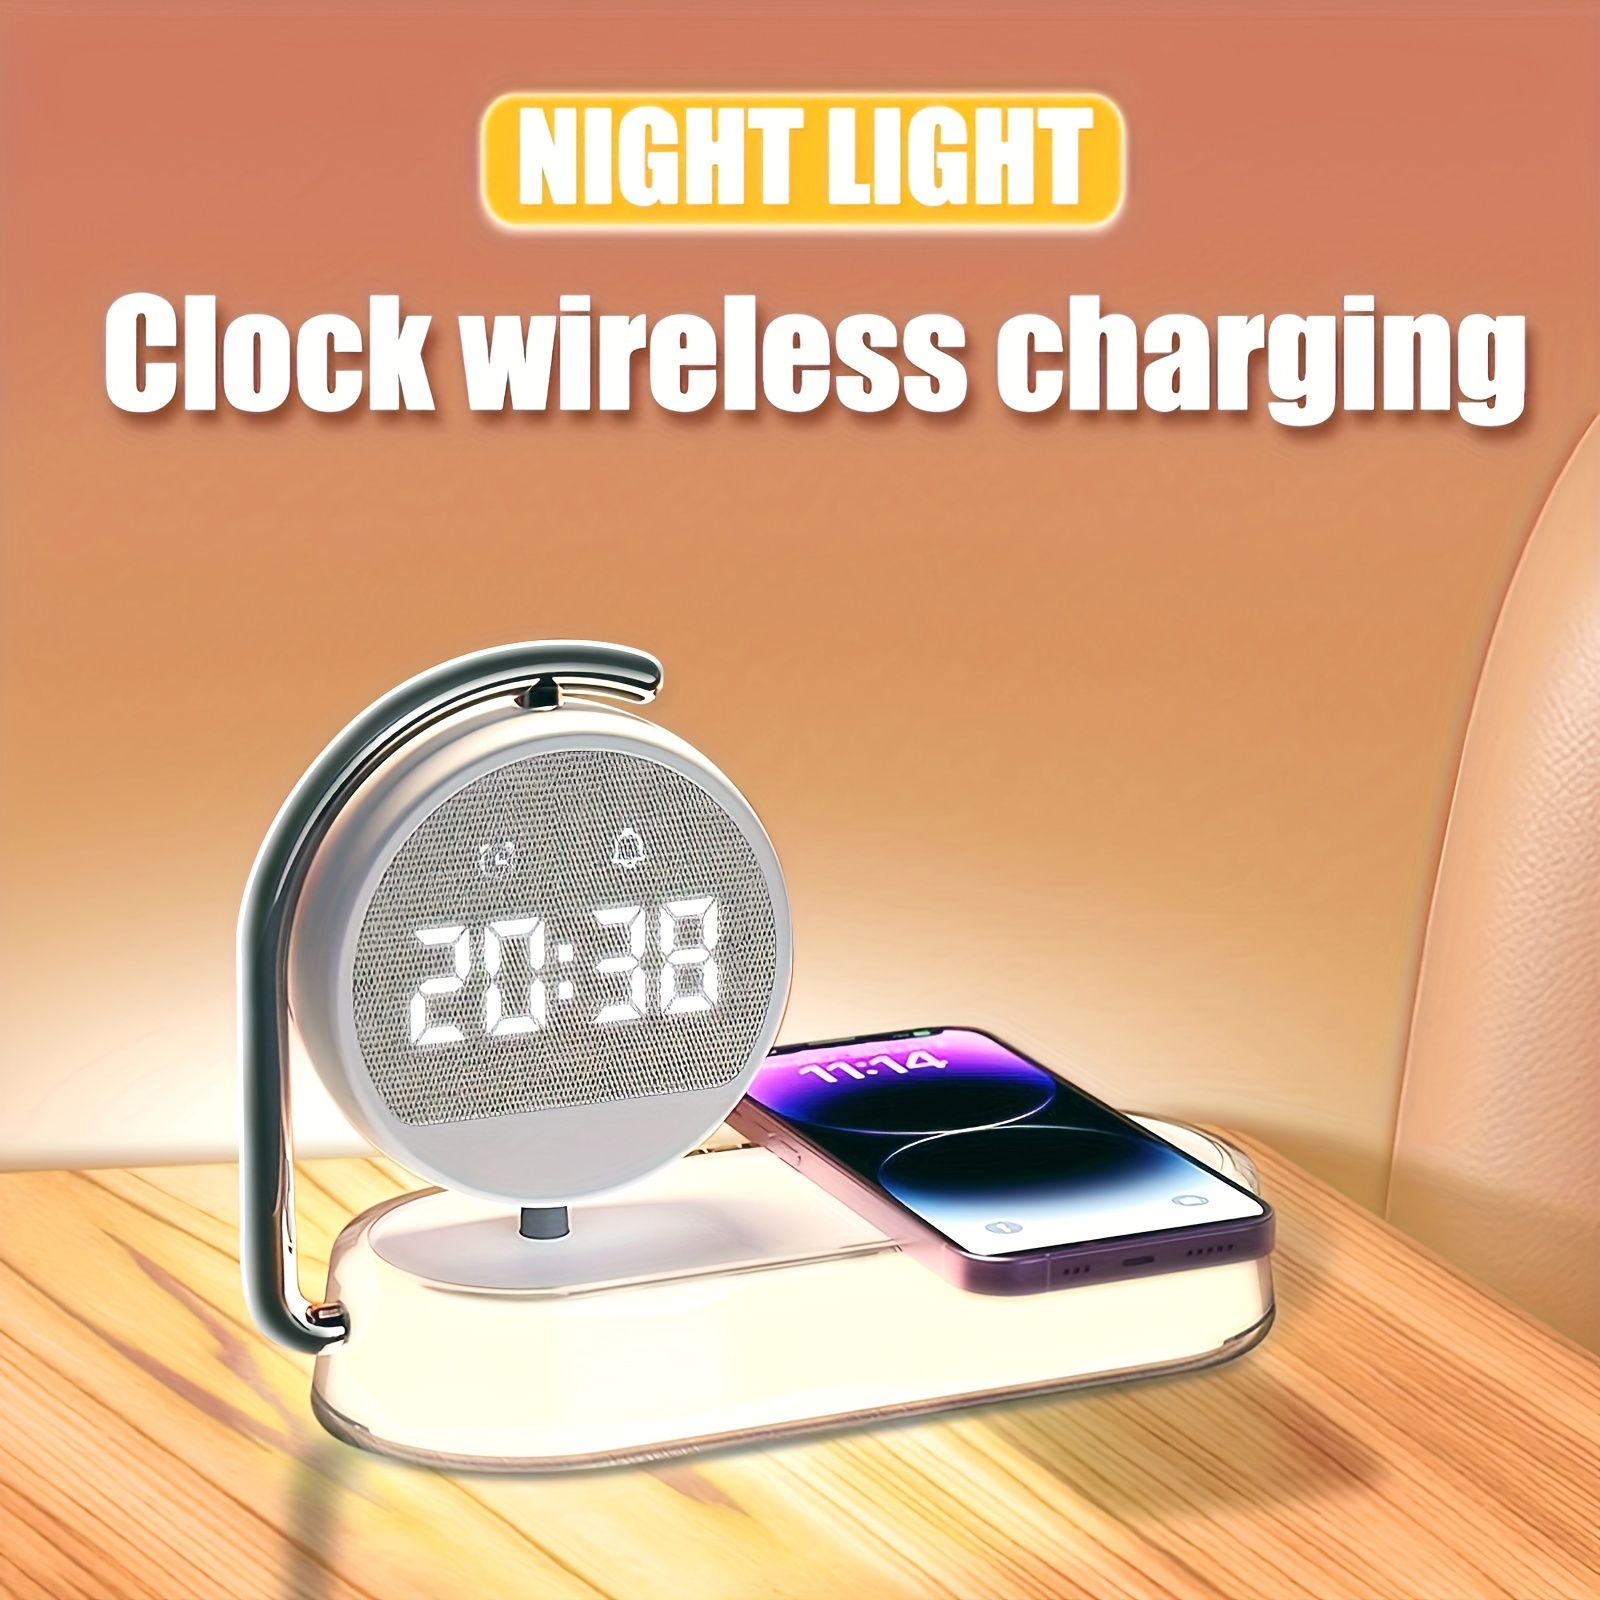 Reloj Digital Despertador con Luz Despertador Reproductor de